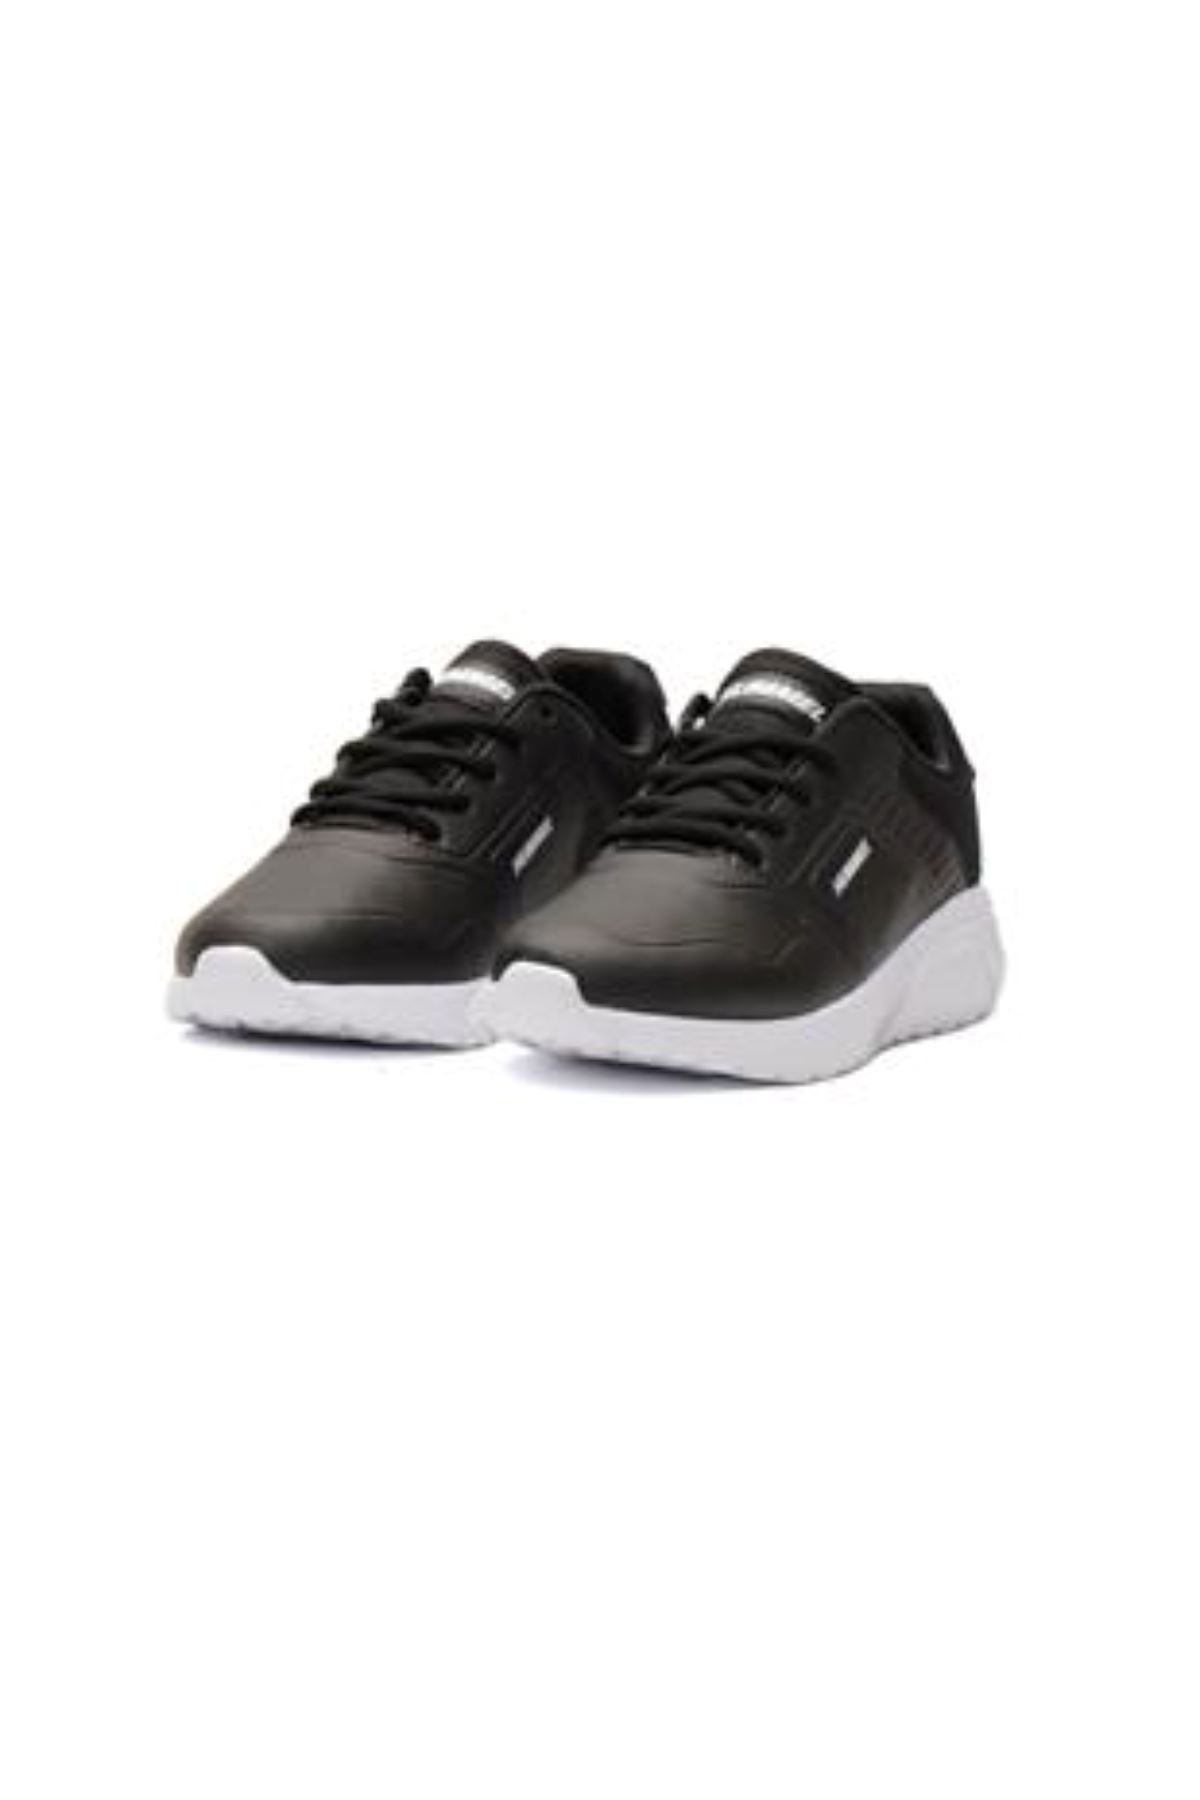 Kadın Siyah Spor Ayakkabı - 900406-2001